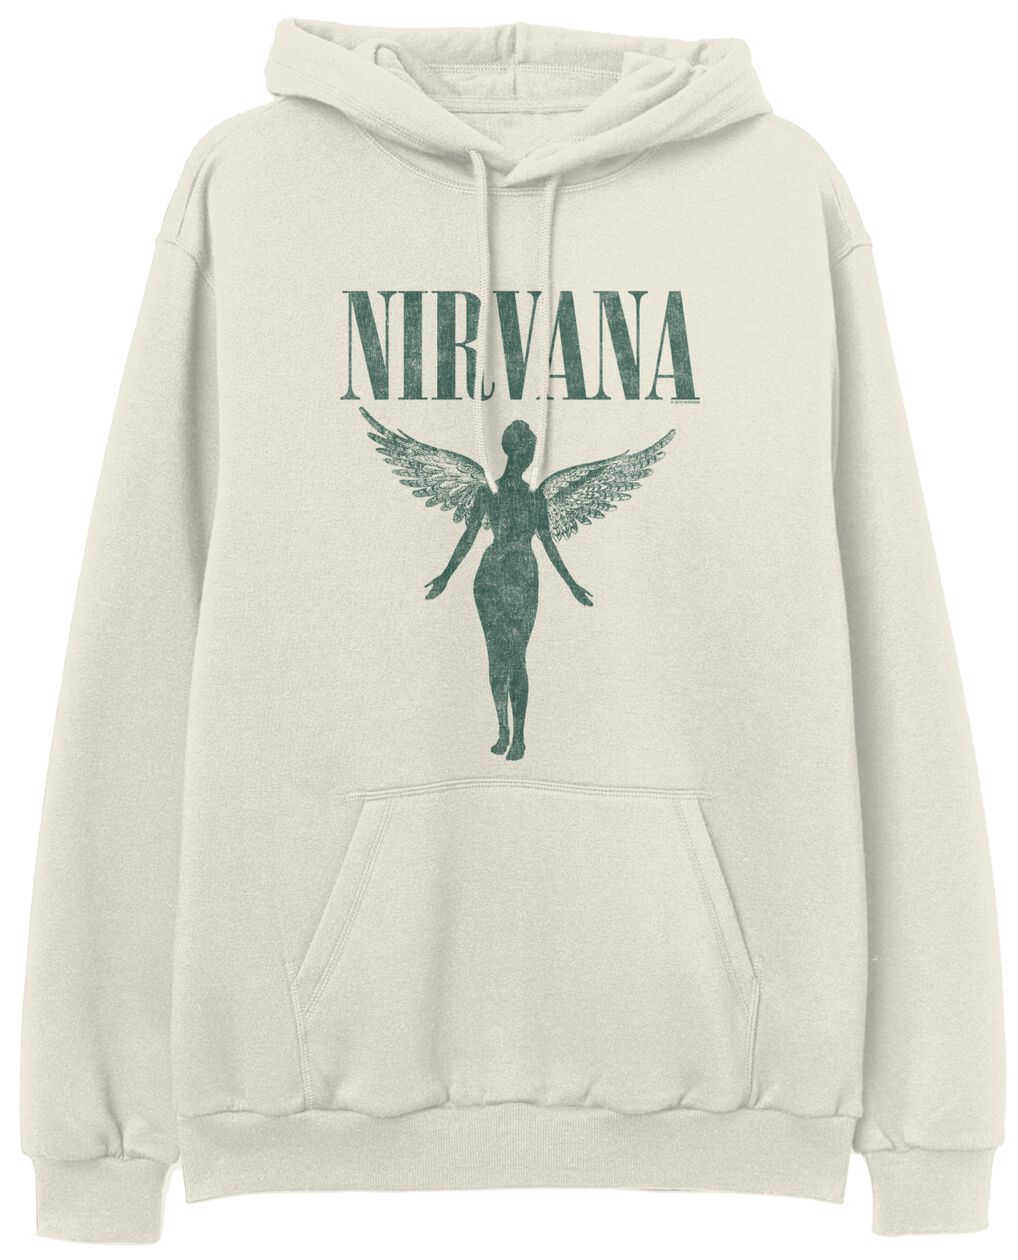 Nirvana Kapuzenpullover - Angel - S bis XXL - für Männer - Größe M - beige  - Lizenziertes Merchandise!